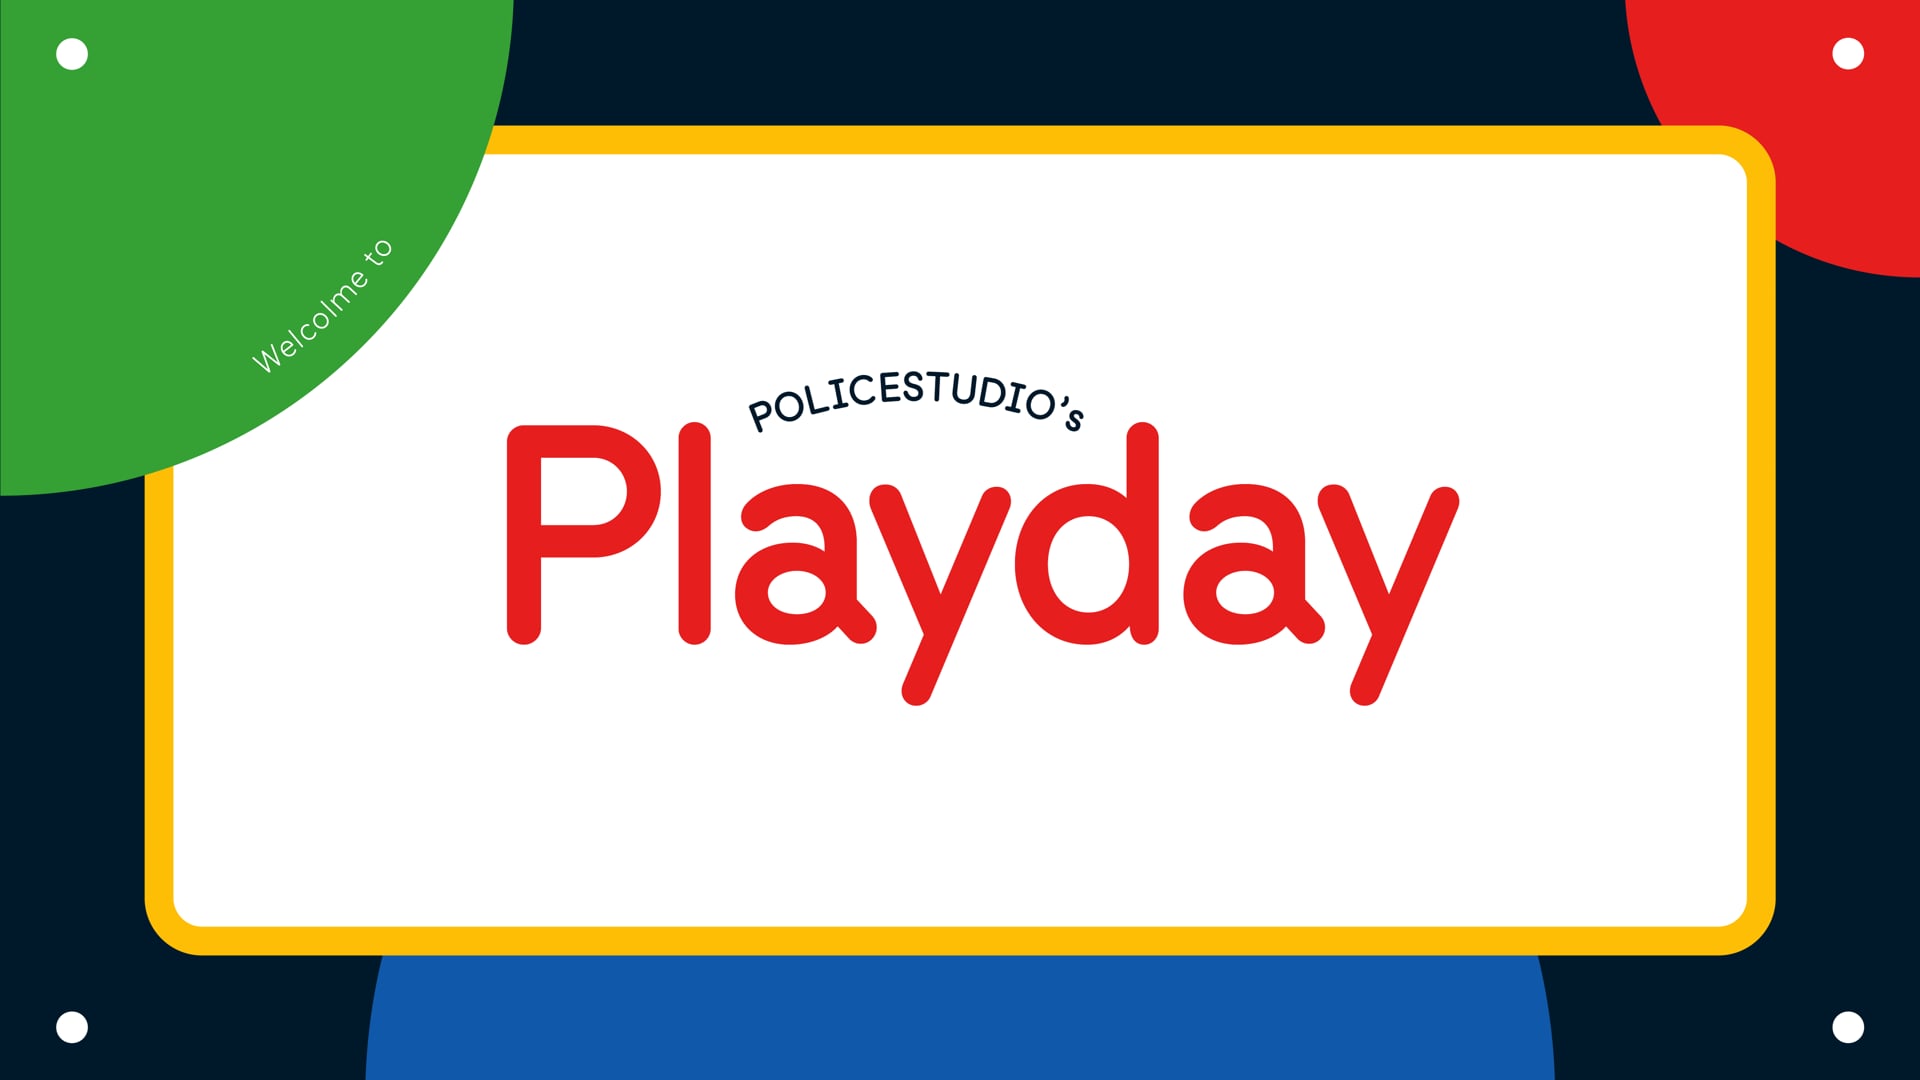 Policestudio's Playday Animated Type Specimen